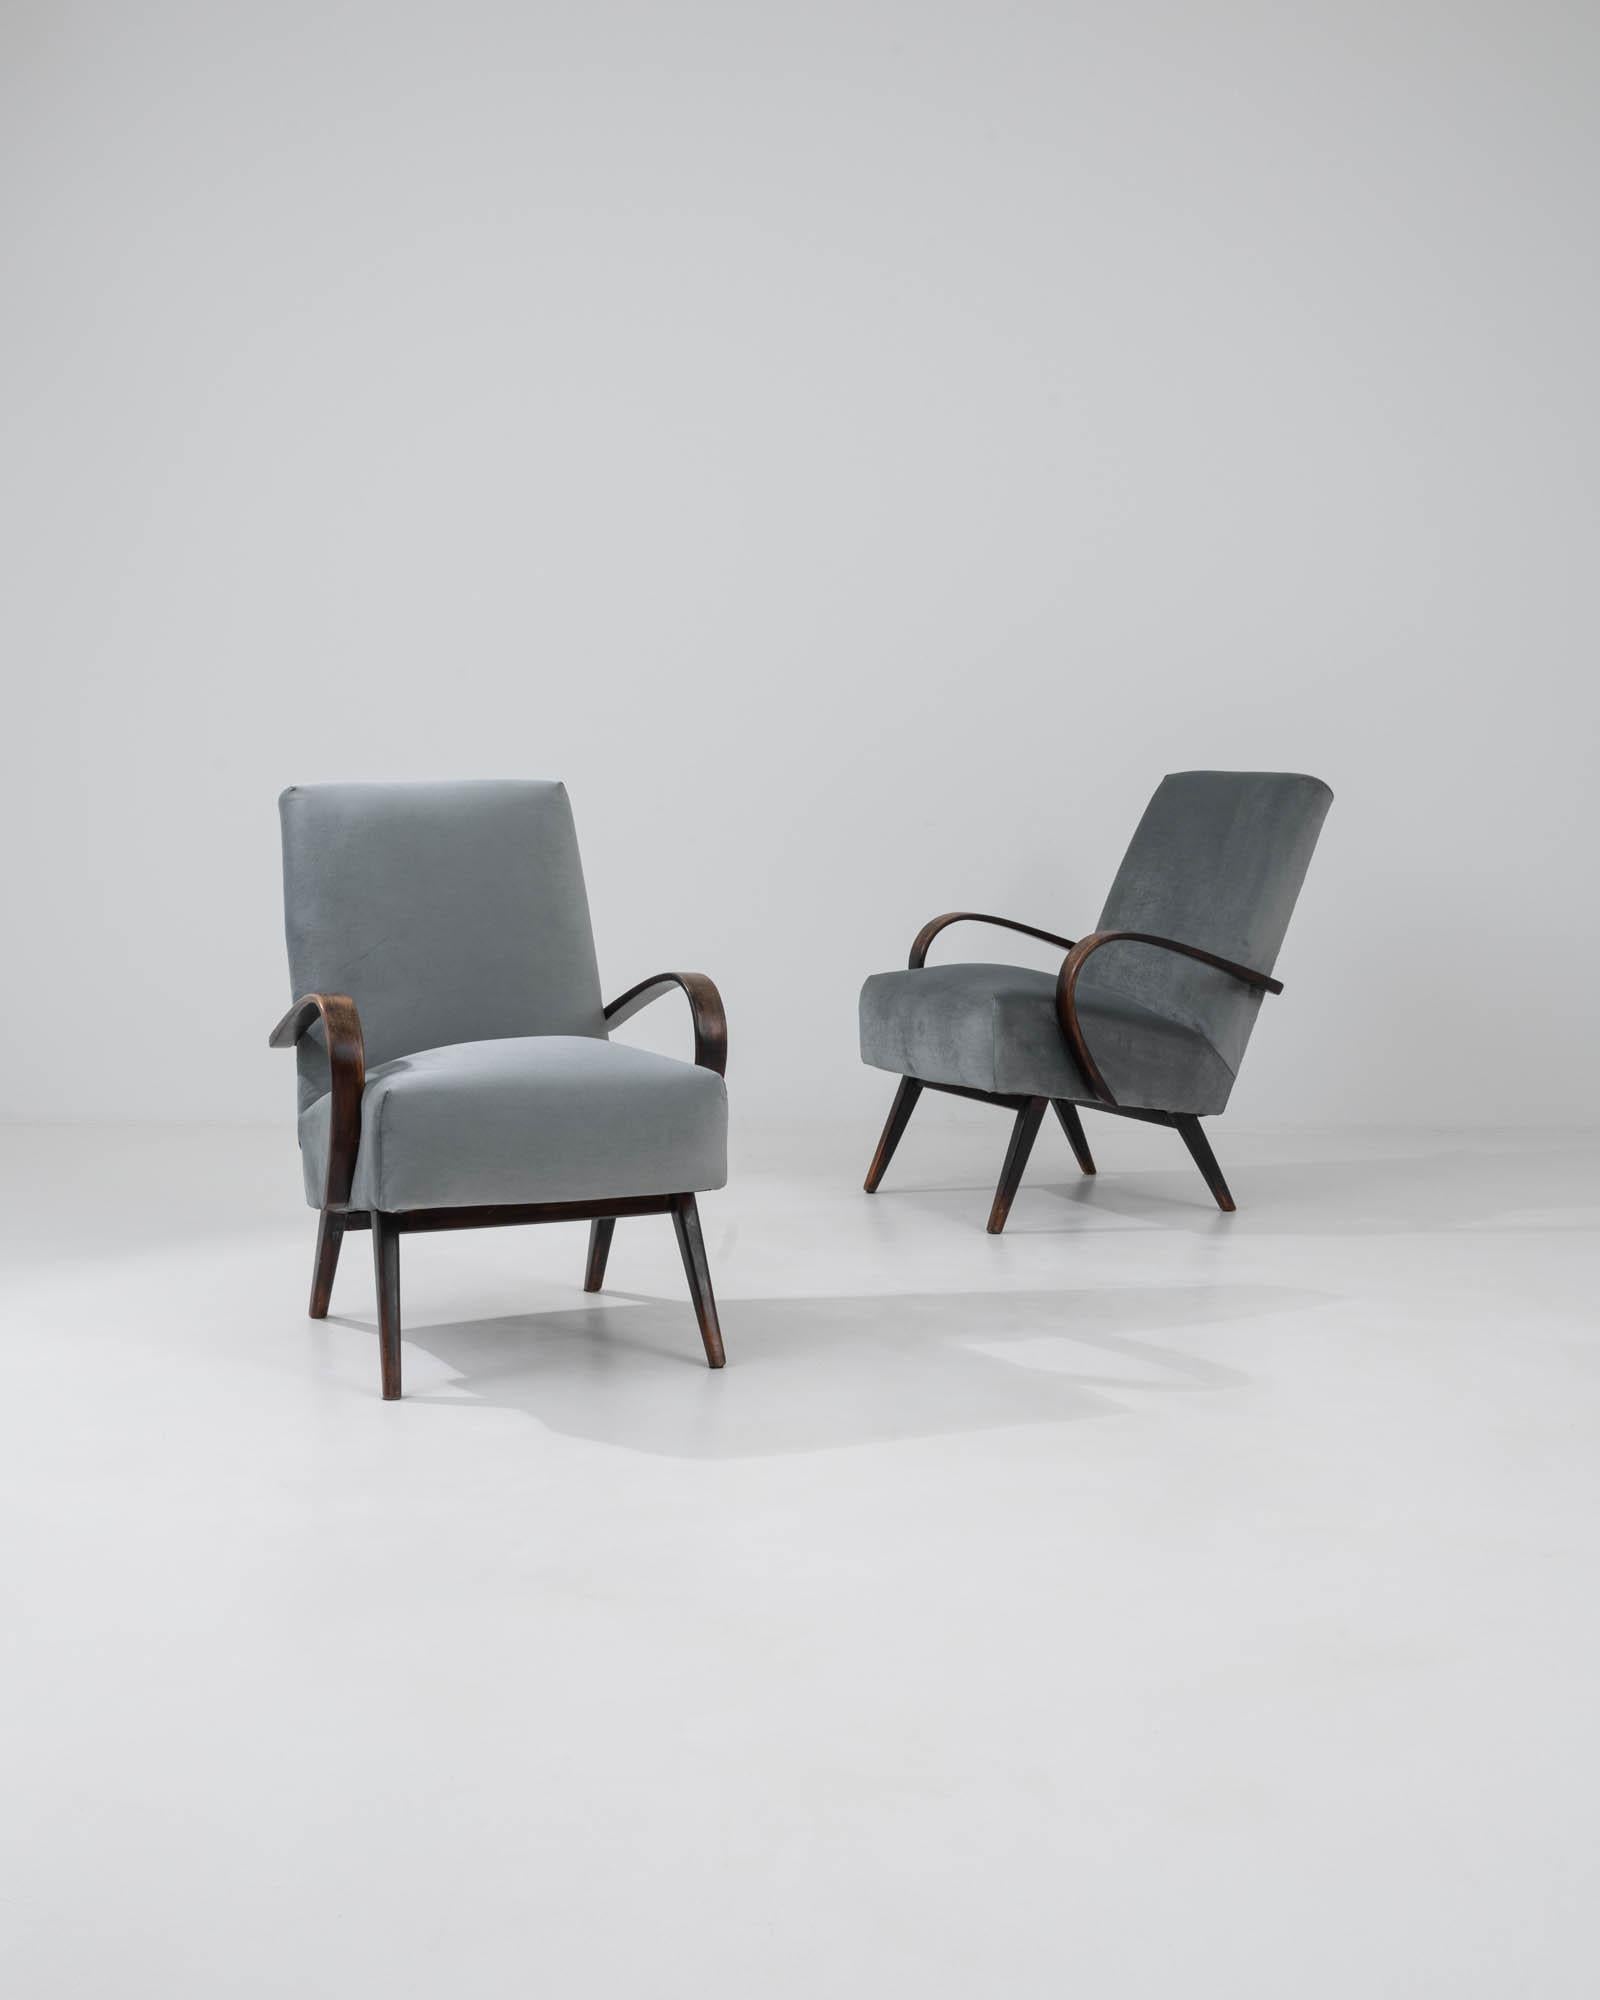 Mit diesem Paar tschechischer Sessel aus den 1960er Jahren des renommierten Designers J. Halabala betreten Sie das Reich der zeitlosen Eleganz. Diese Stühle sind in einem ruhigen Grauton gepolstert und verkörpern mit ihren schlanken Linien und